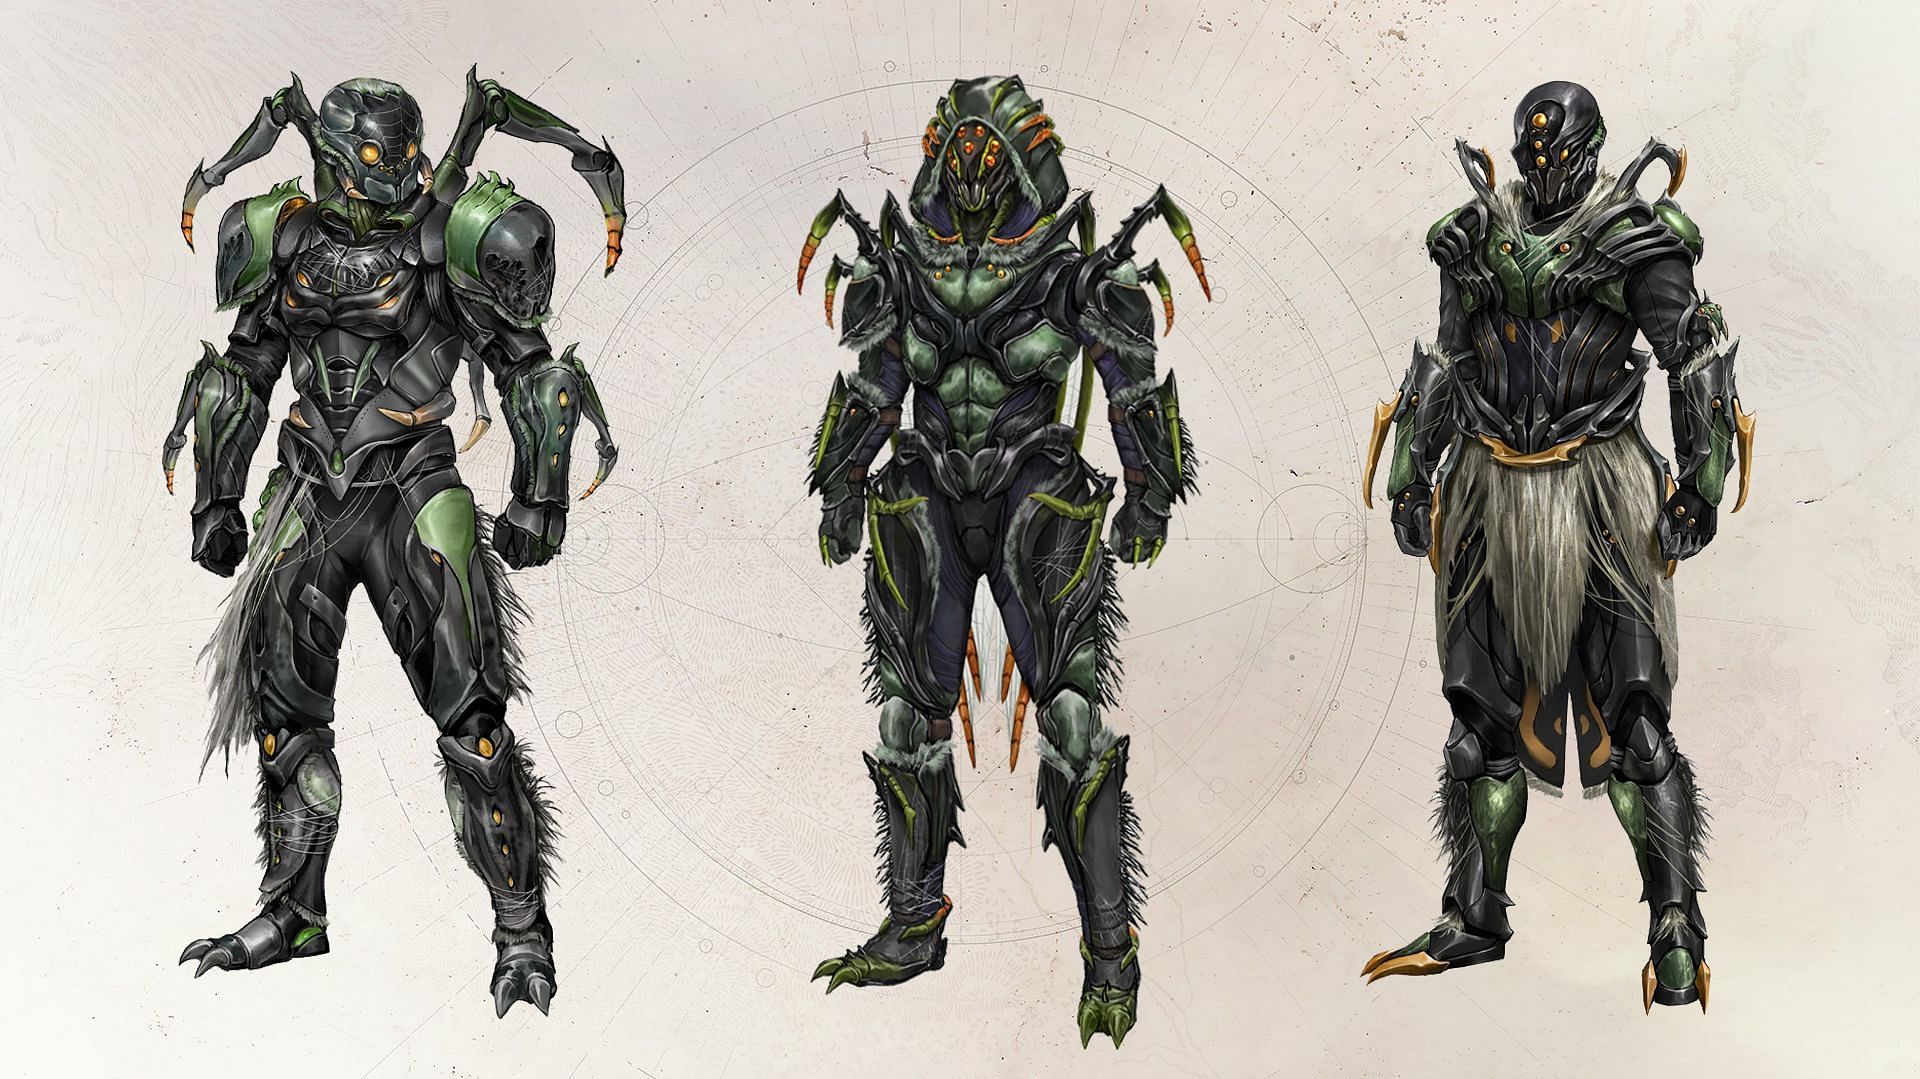 Destiny 2 spider armor set (Image via Bungie) 